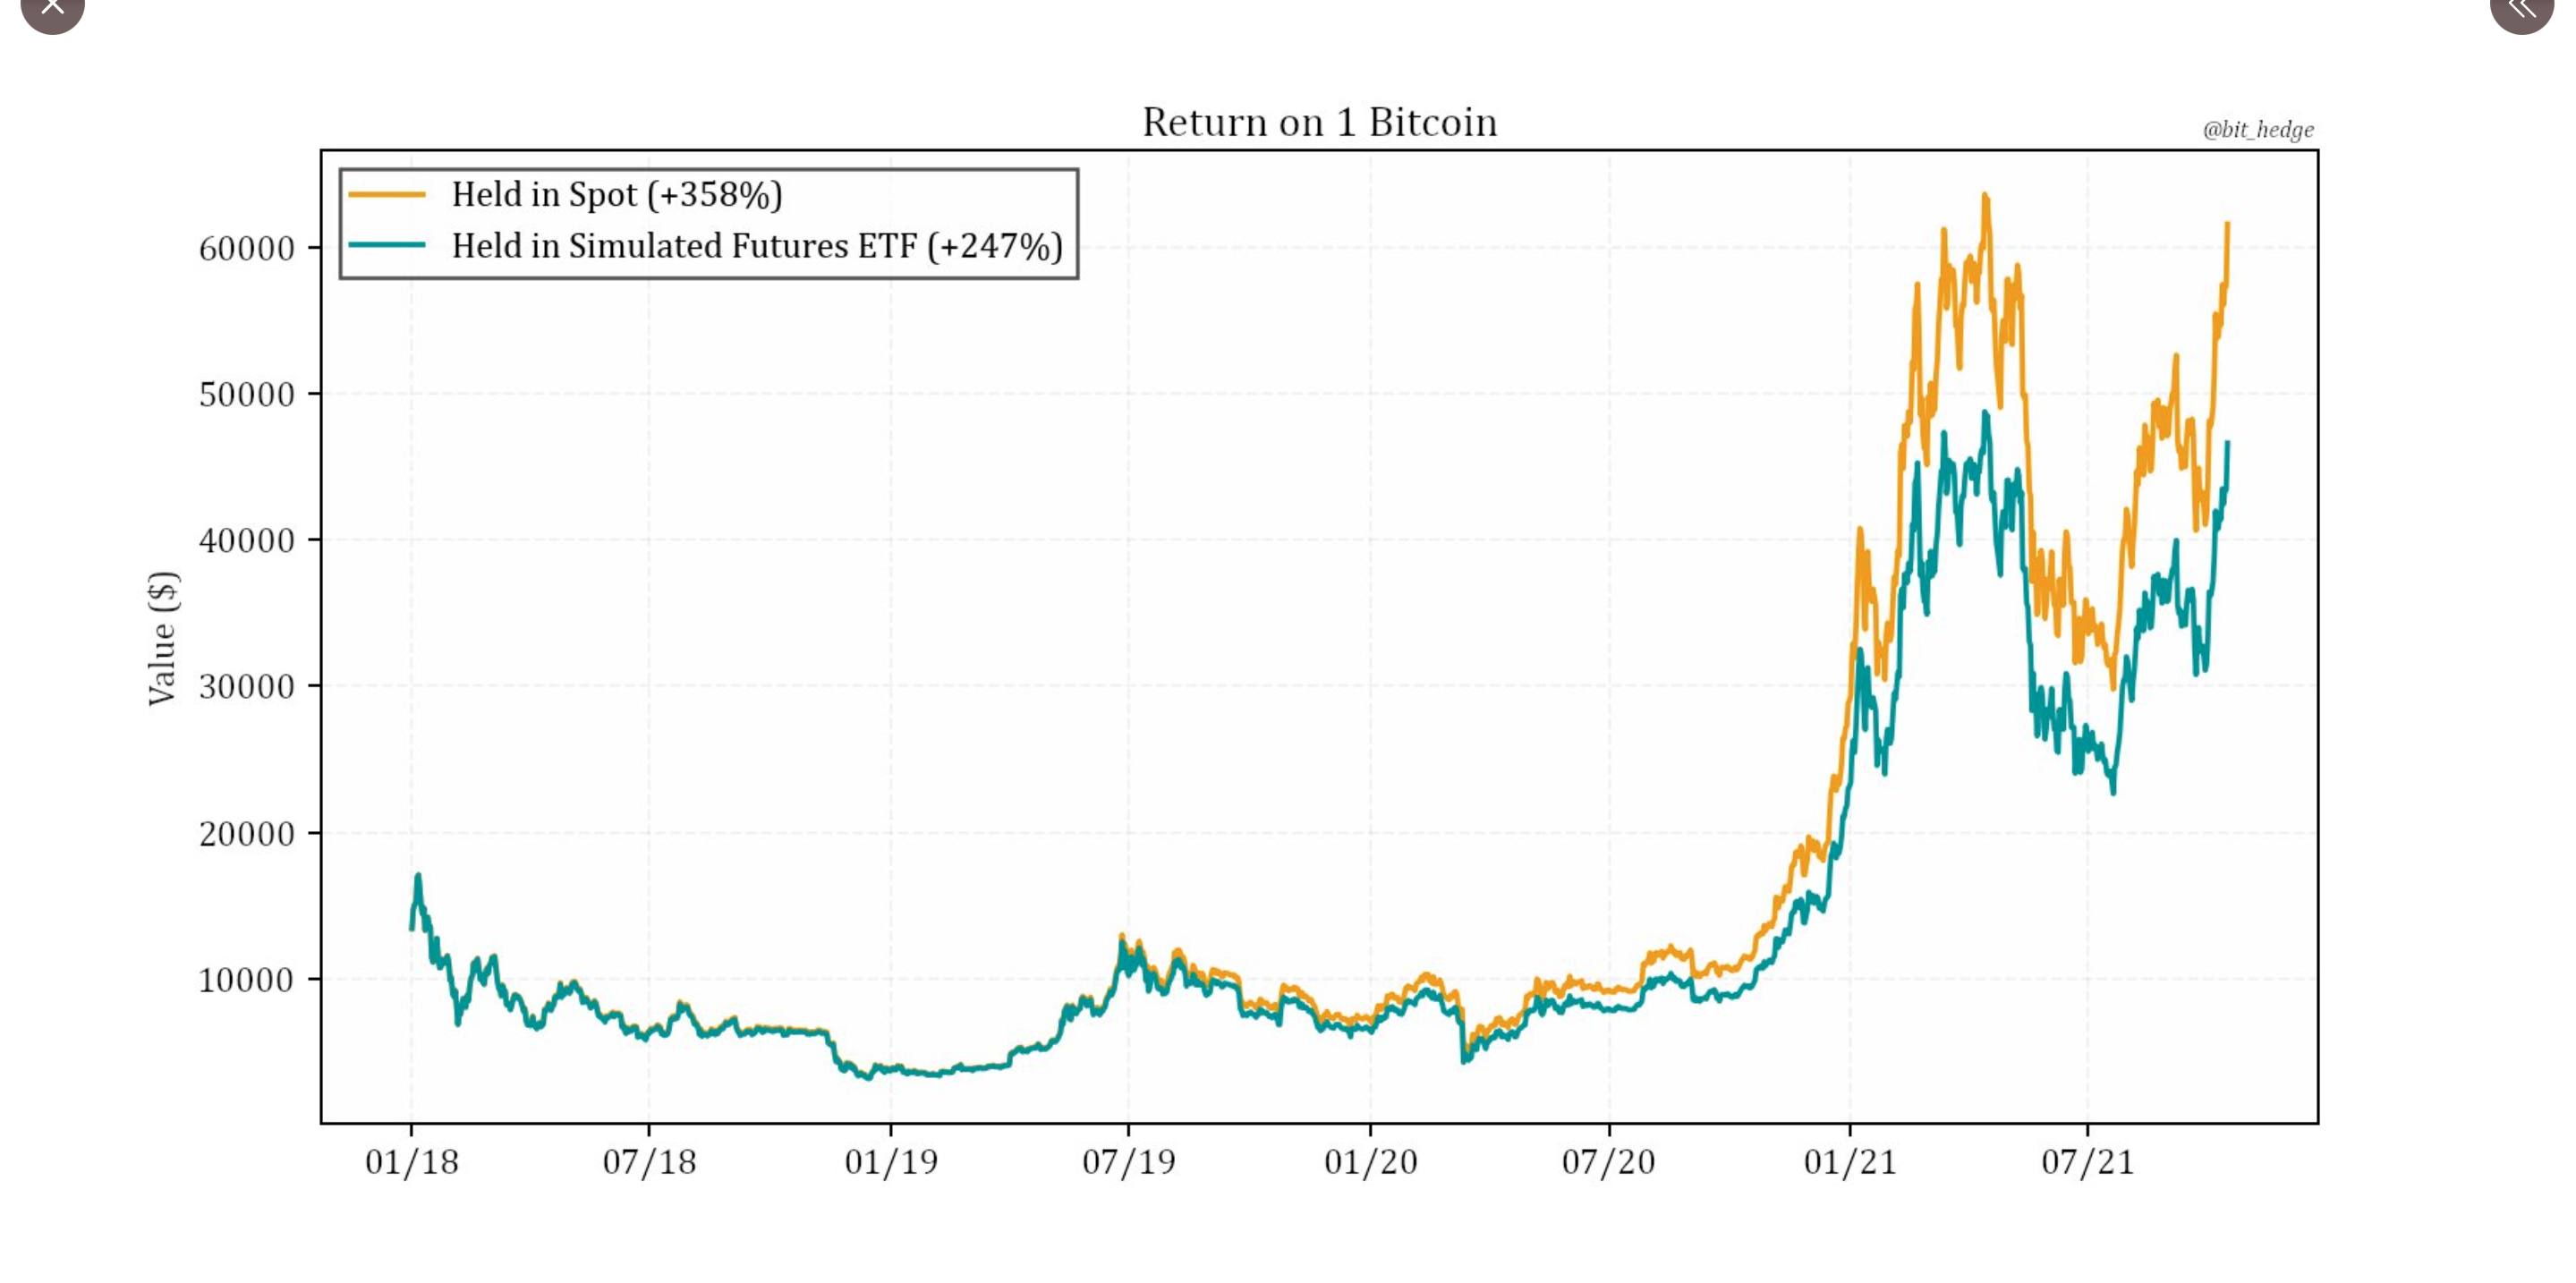 El ETF de futuros de Bitcoin ha tenido un rendimiento inferior a los precios al contado desde 2018, ¿sigue siendo viable?